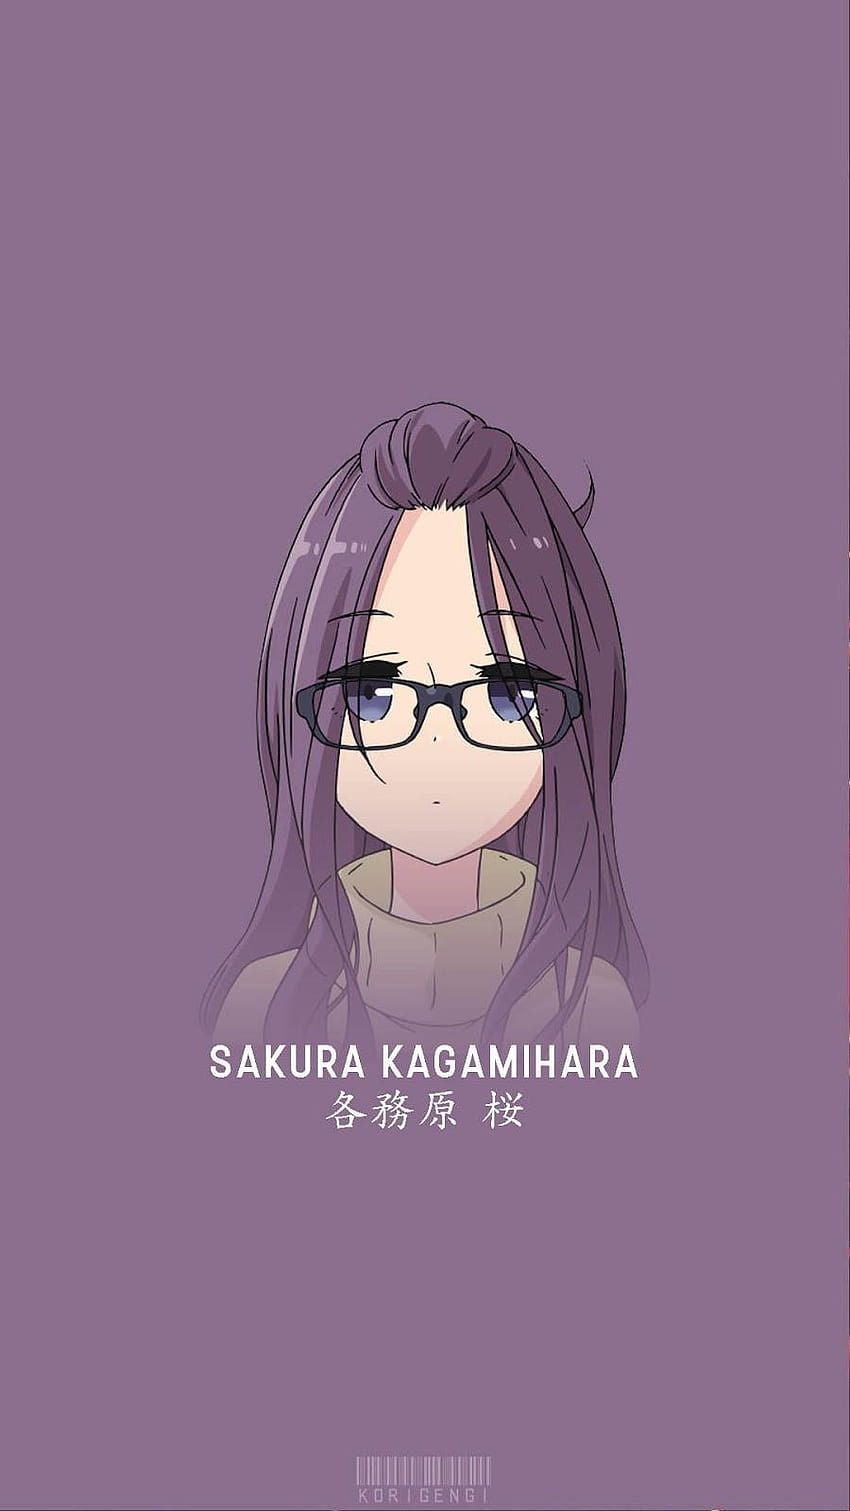 Sakura Kagamihara, yuru camp mobile HD phone wallpaper